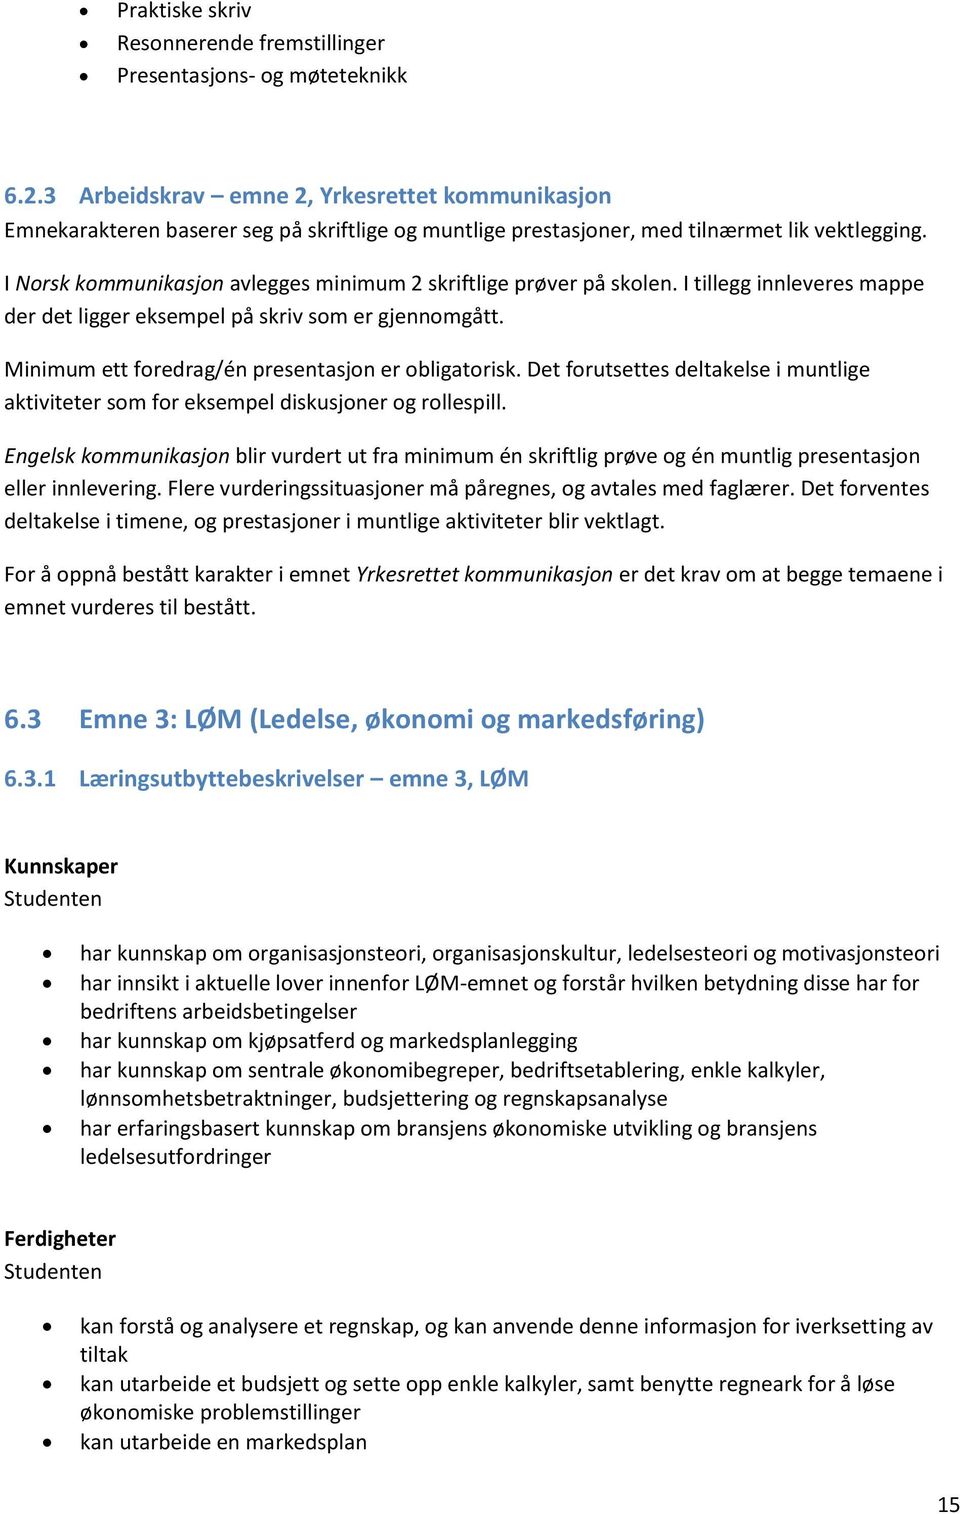 I Norsk kommunikasjon avlegges minimum 2 skriftlige prøver på skolen. I tillegg innleveres mappe der det ligger eksempel på skriv som er gjennomgått.